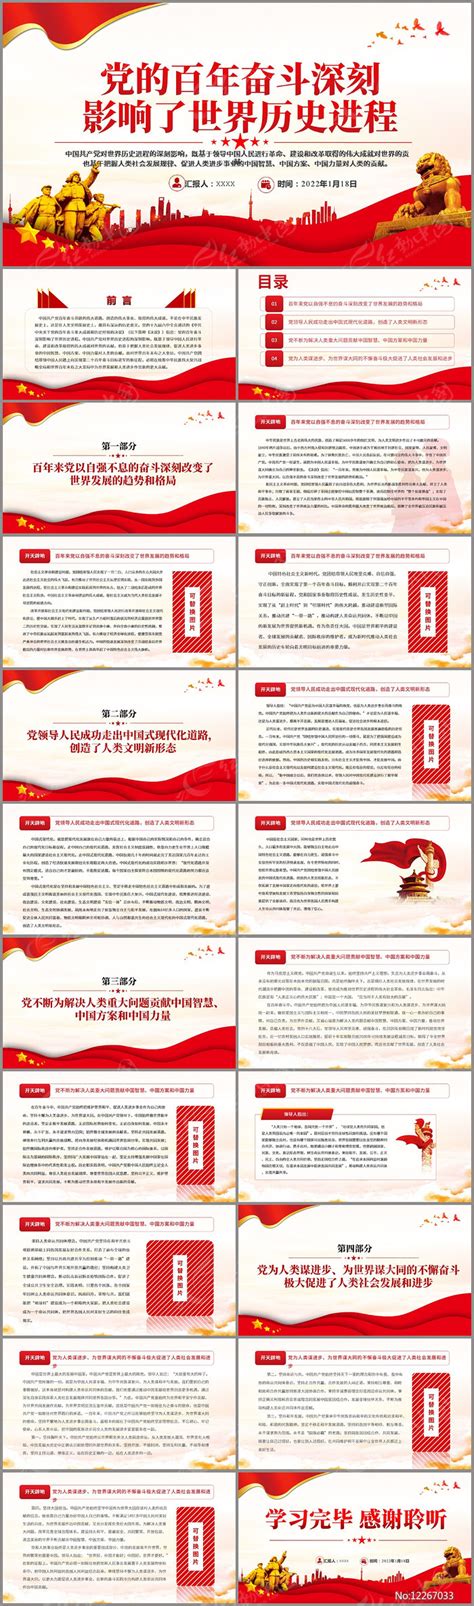 党的百年奋斗深刻影响了世界历史进程PPT下载_红动中国